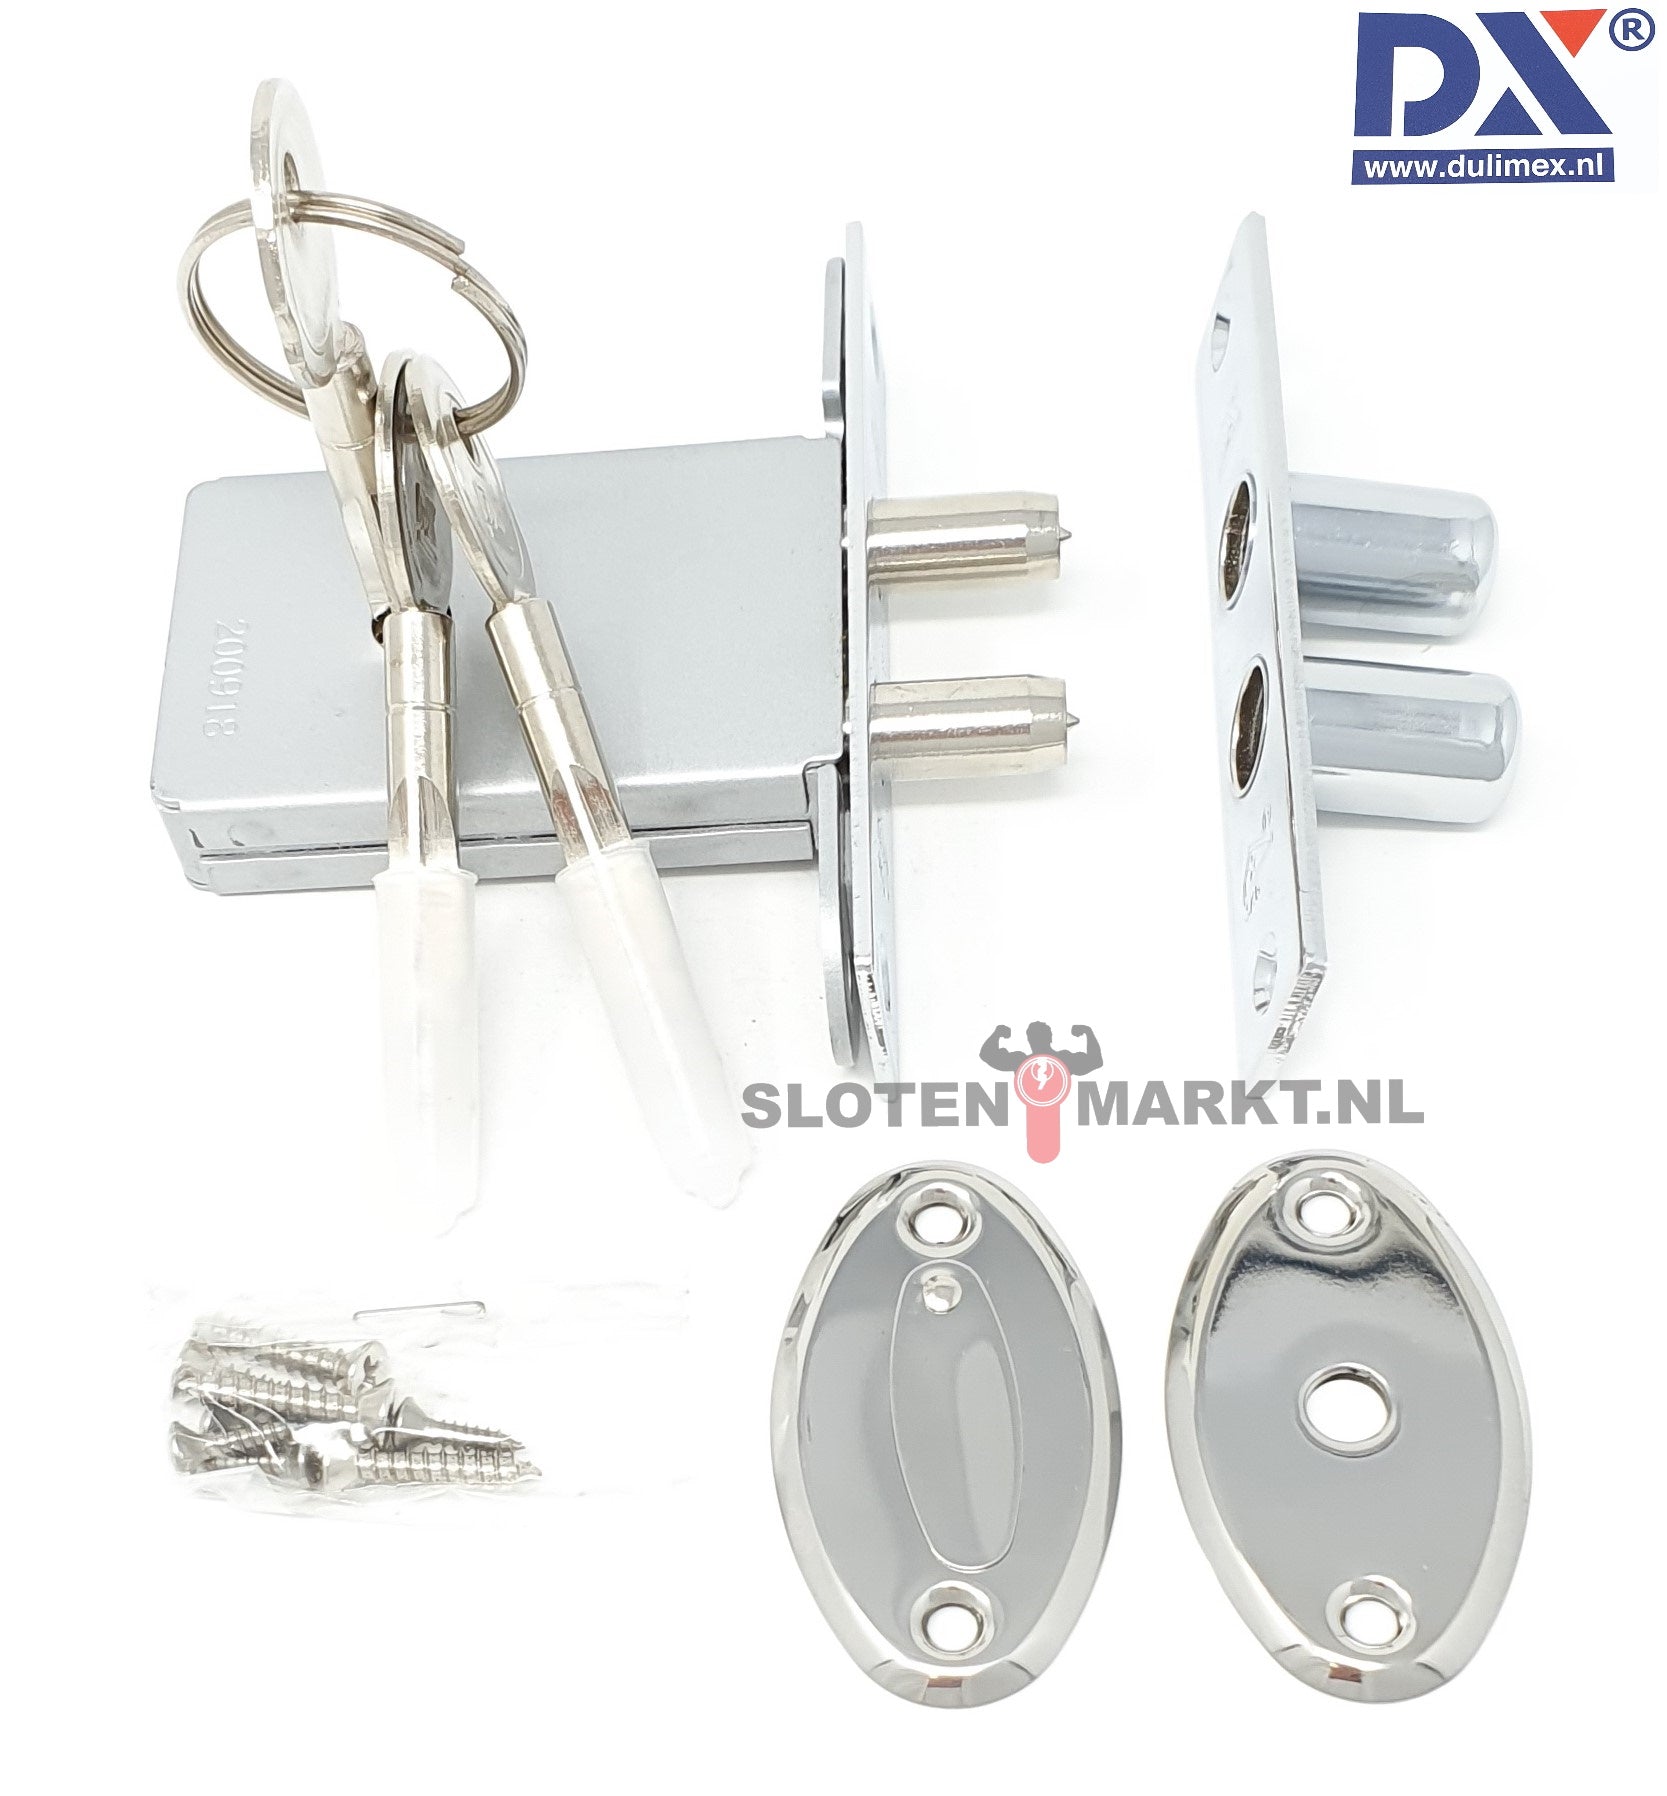 Penslot DX SKG**® DM50 incl. sluitkom en 3 sleutels per 5 GLS